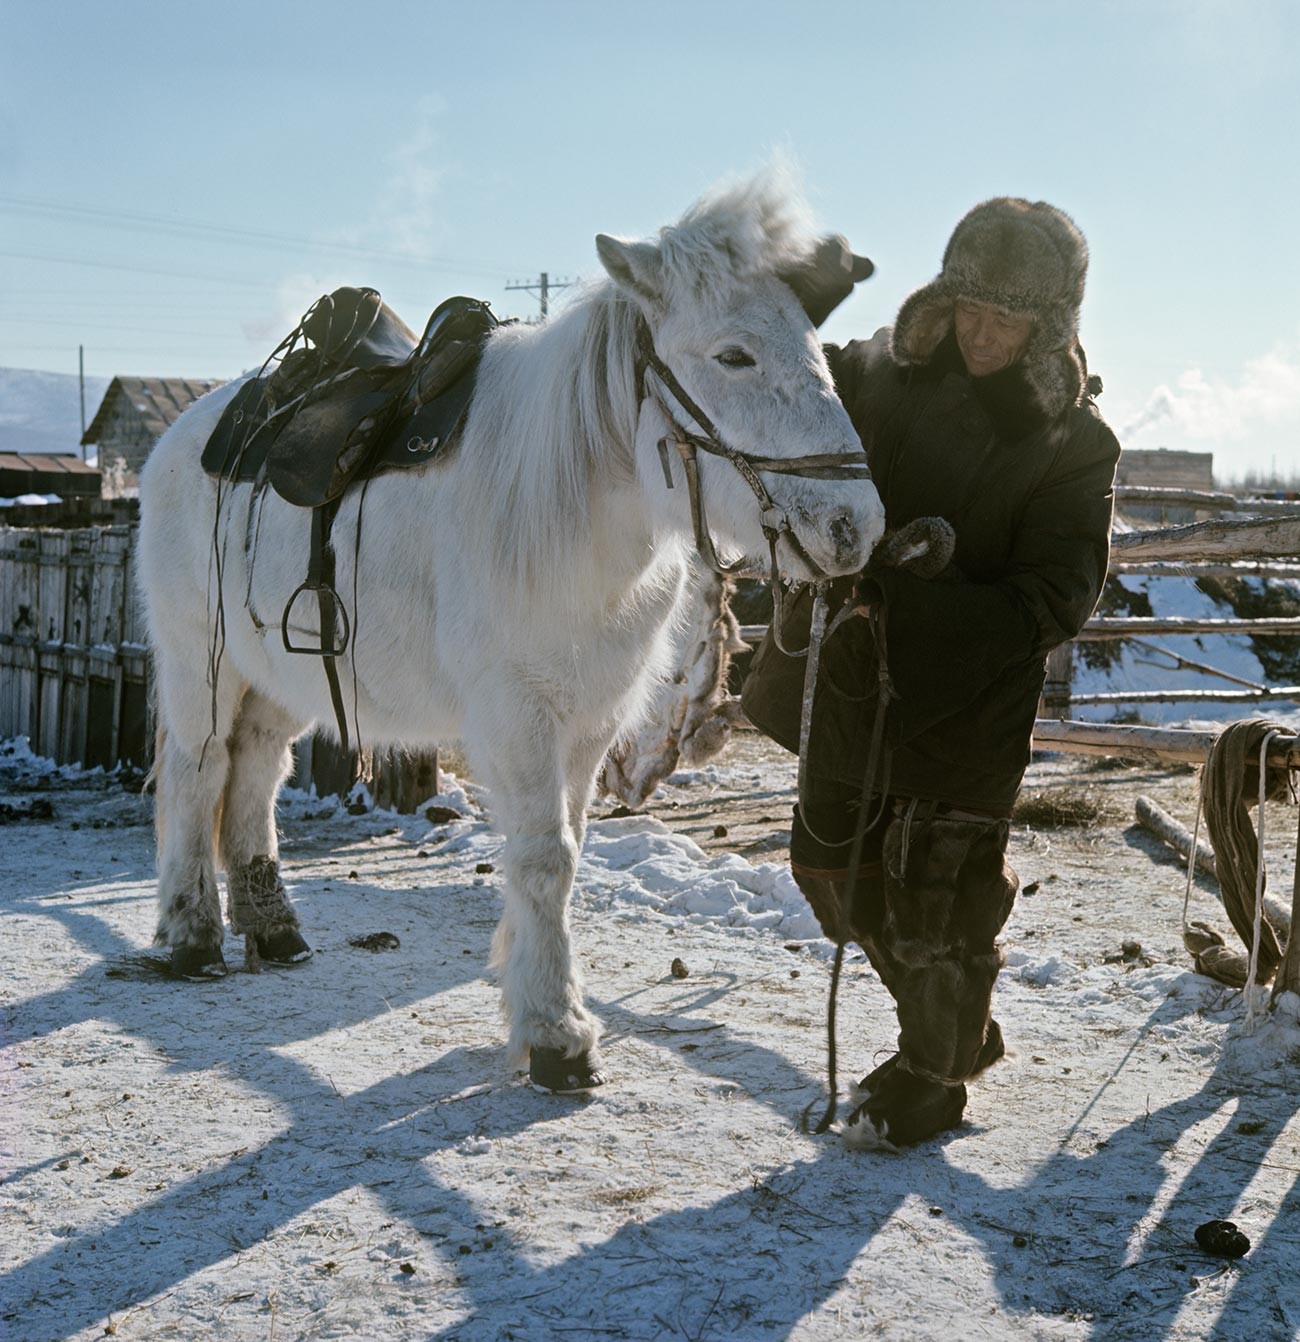 Lovac Andrej Aleksejev s jakutskim konjem. Jakutija.

